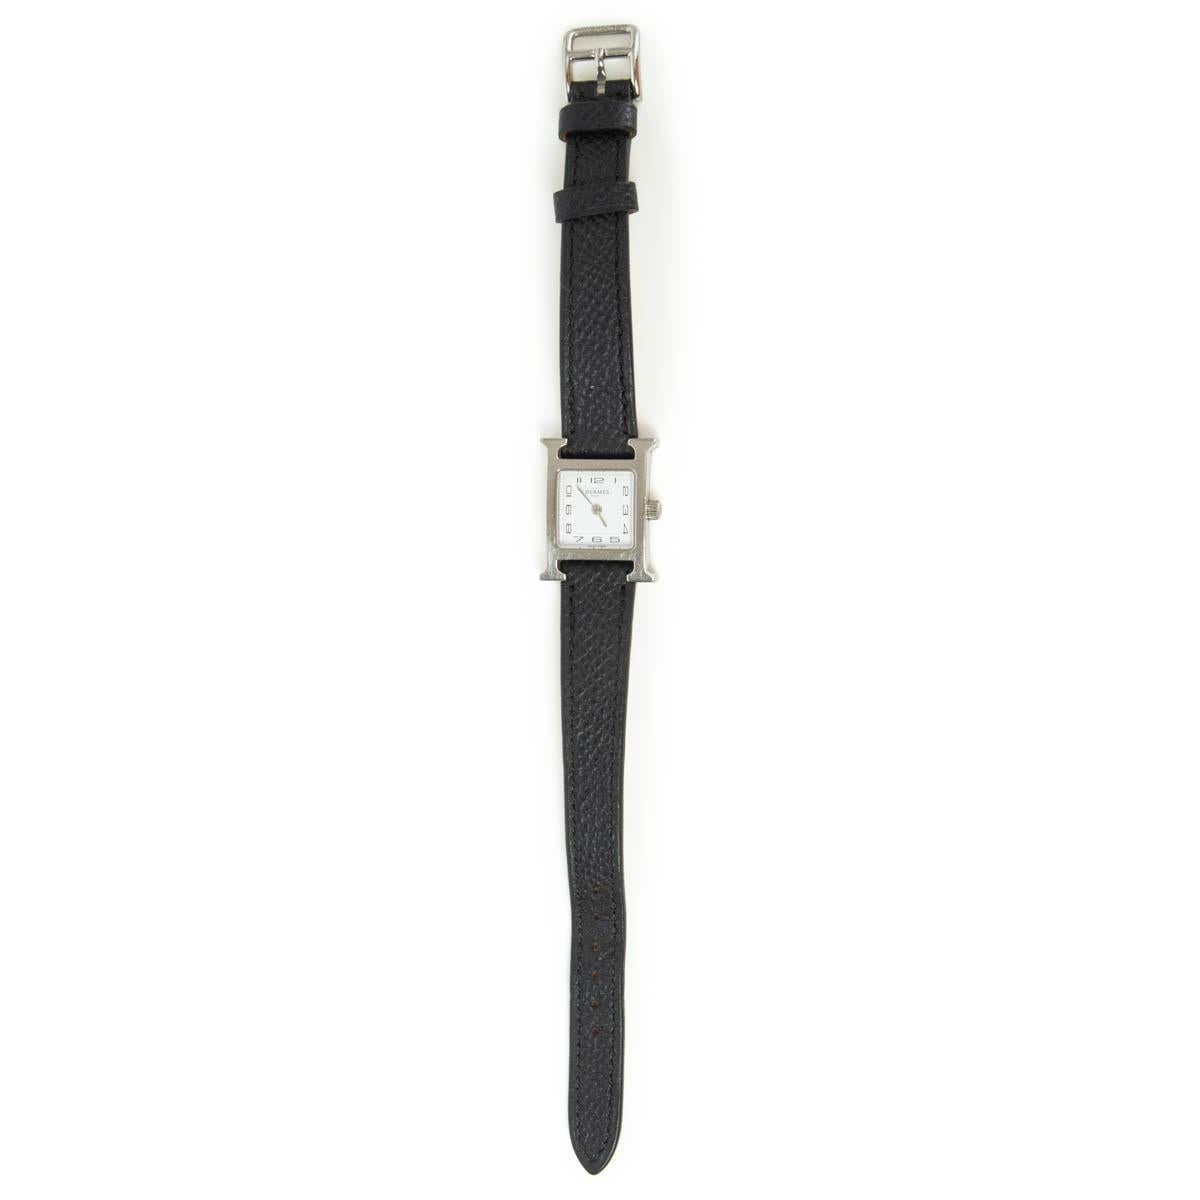 100% authentische Hermès Heure H Uhr Mini Modèle 21mm aus Stahl mit weißem Zifferblatt und Sonnenschliff gestempelt. Quarzwerk und Armband aus schwarzem Epsom-Kalbsleder. Stunden- und Minutenfunktionen. Wurde getragen und zeigt einige Kratzer an der